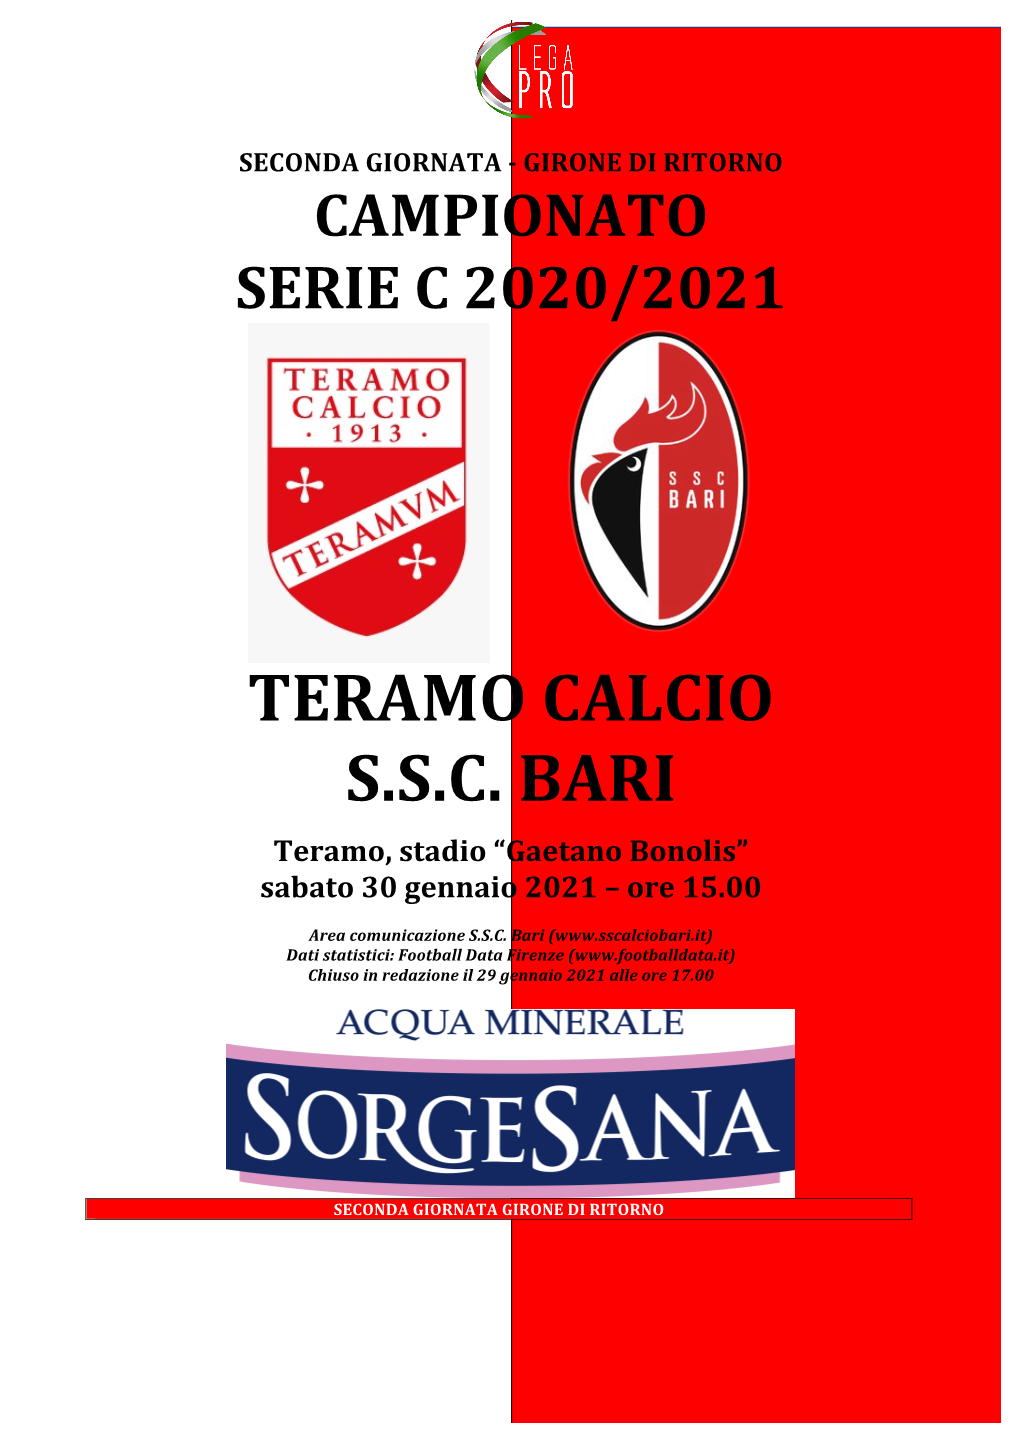 Teramo Calcio S.S.C. Bari